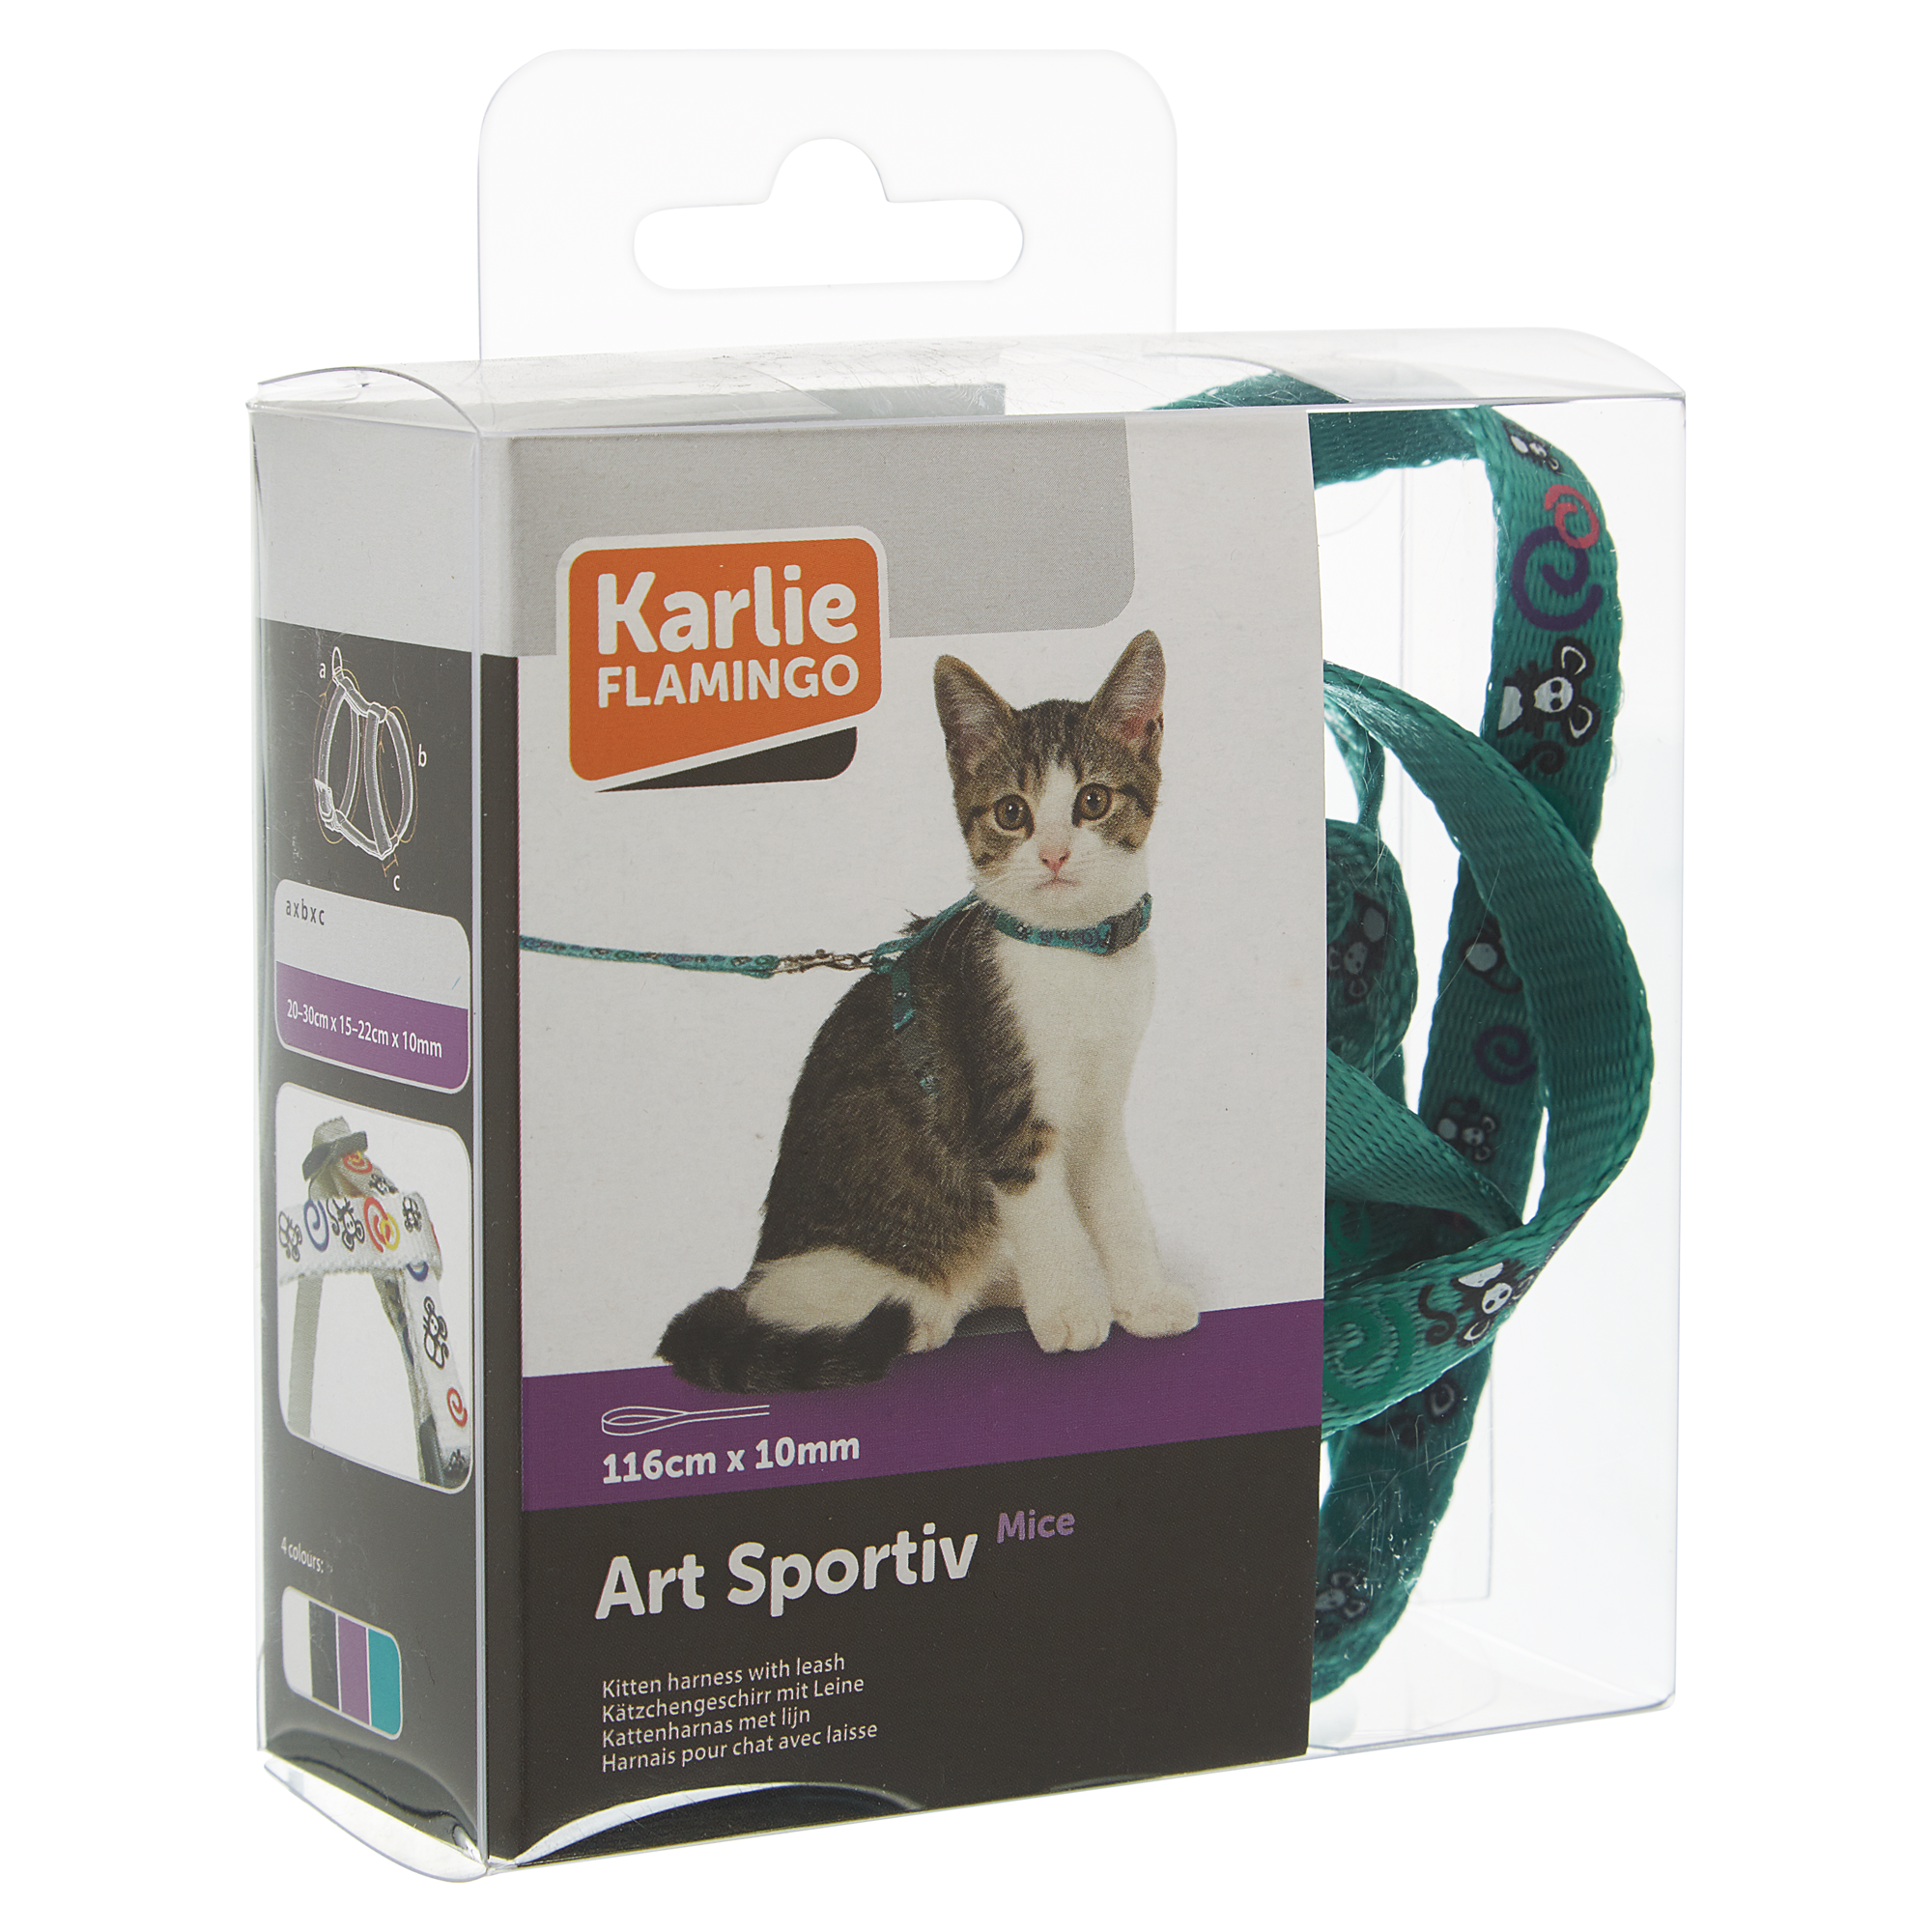 Katzengeschirr mit Leine "Art Sportiv" grün 116 x 1 cm + product picture